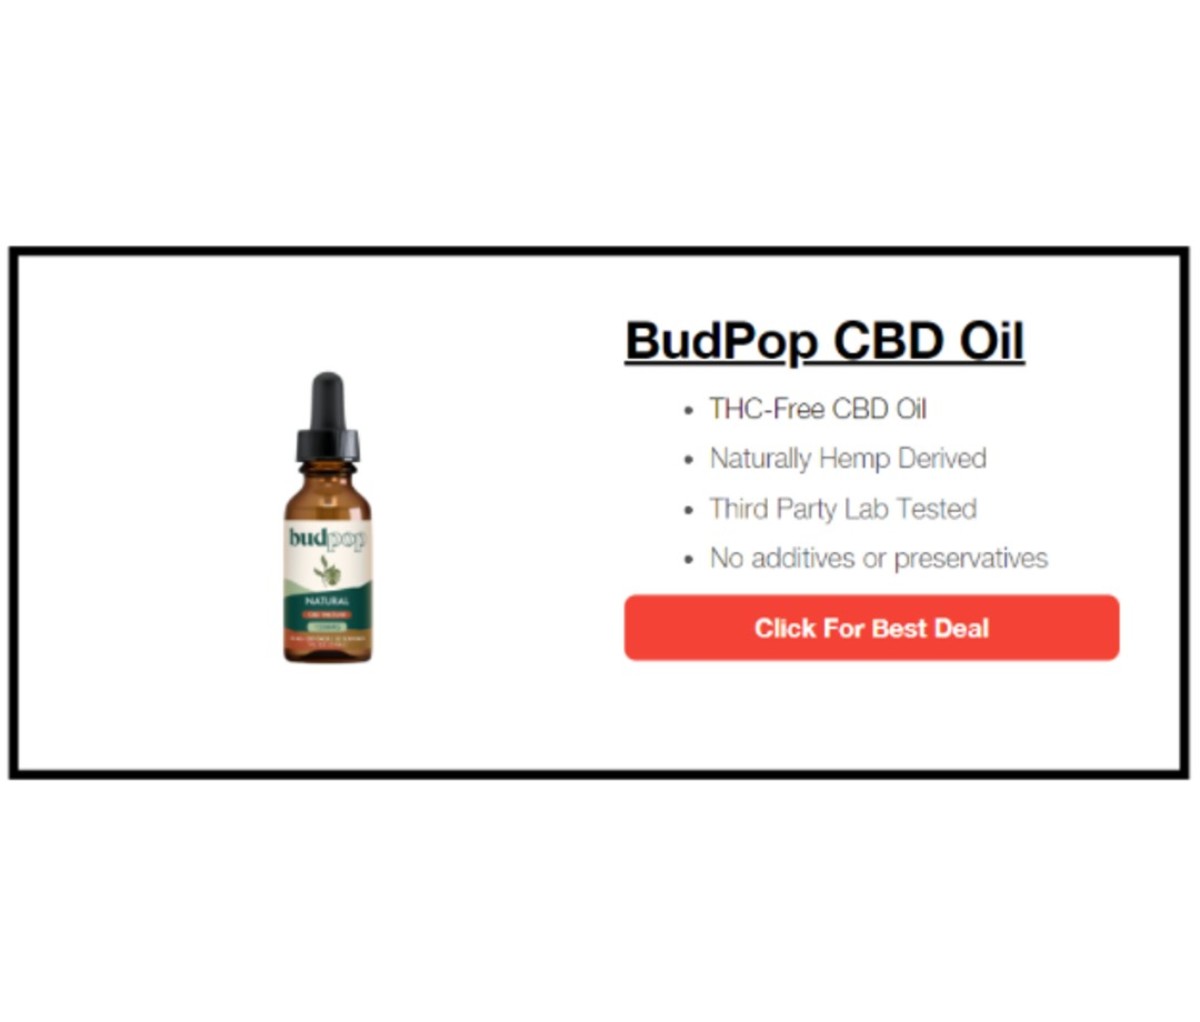 BudPop – Most Potent Brand for CBD Oil for Chronic Pain